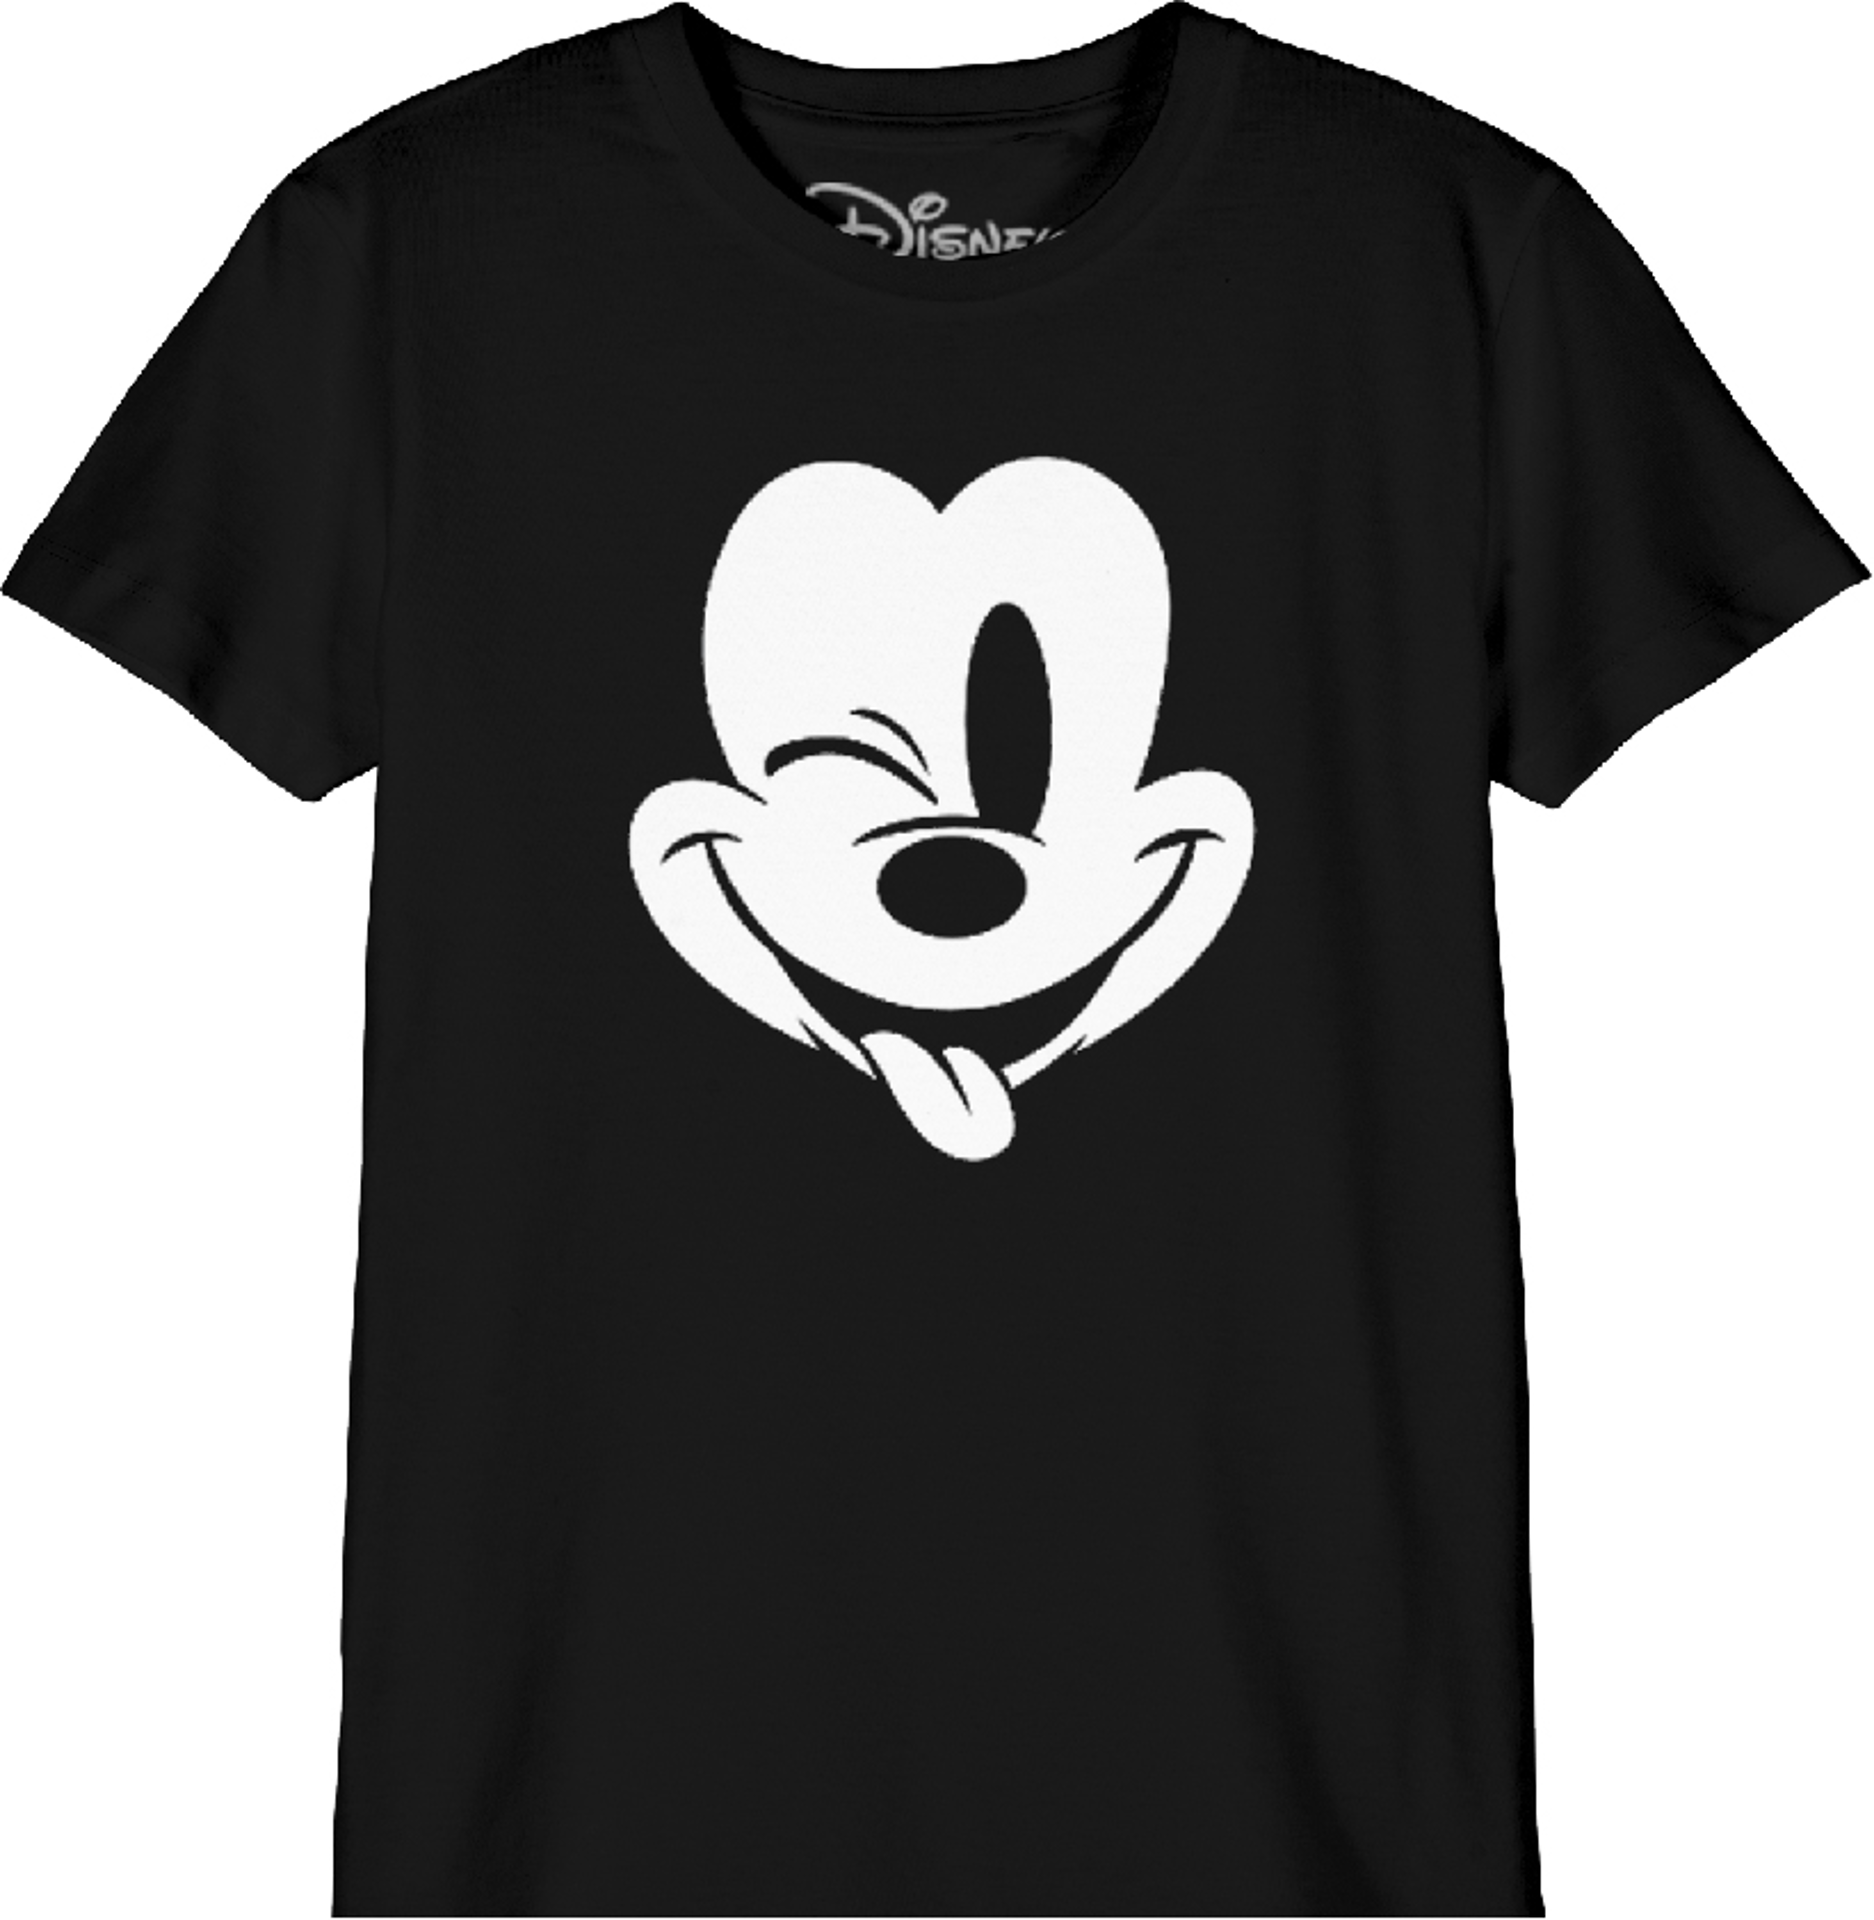 Disney - T-Shirt Noir Enfant Mickey Mouse faisant un clin d'oeil - 14 ans